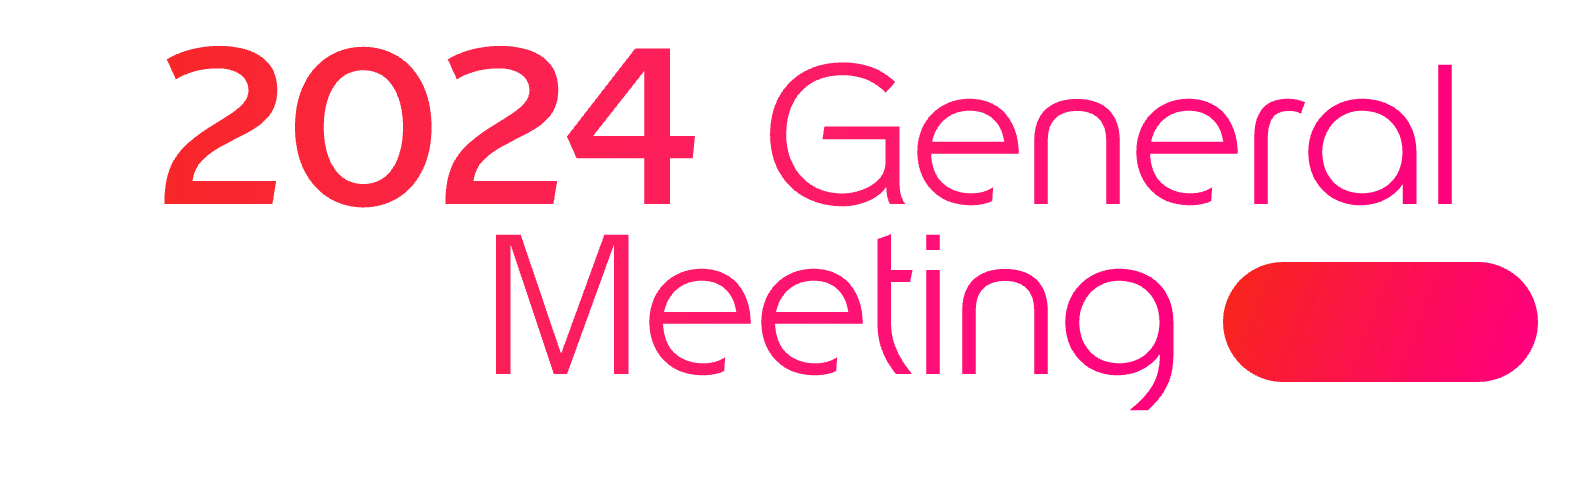 2024 General Meeting